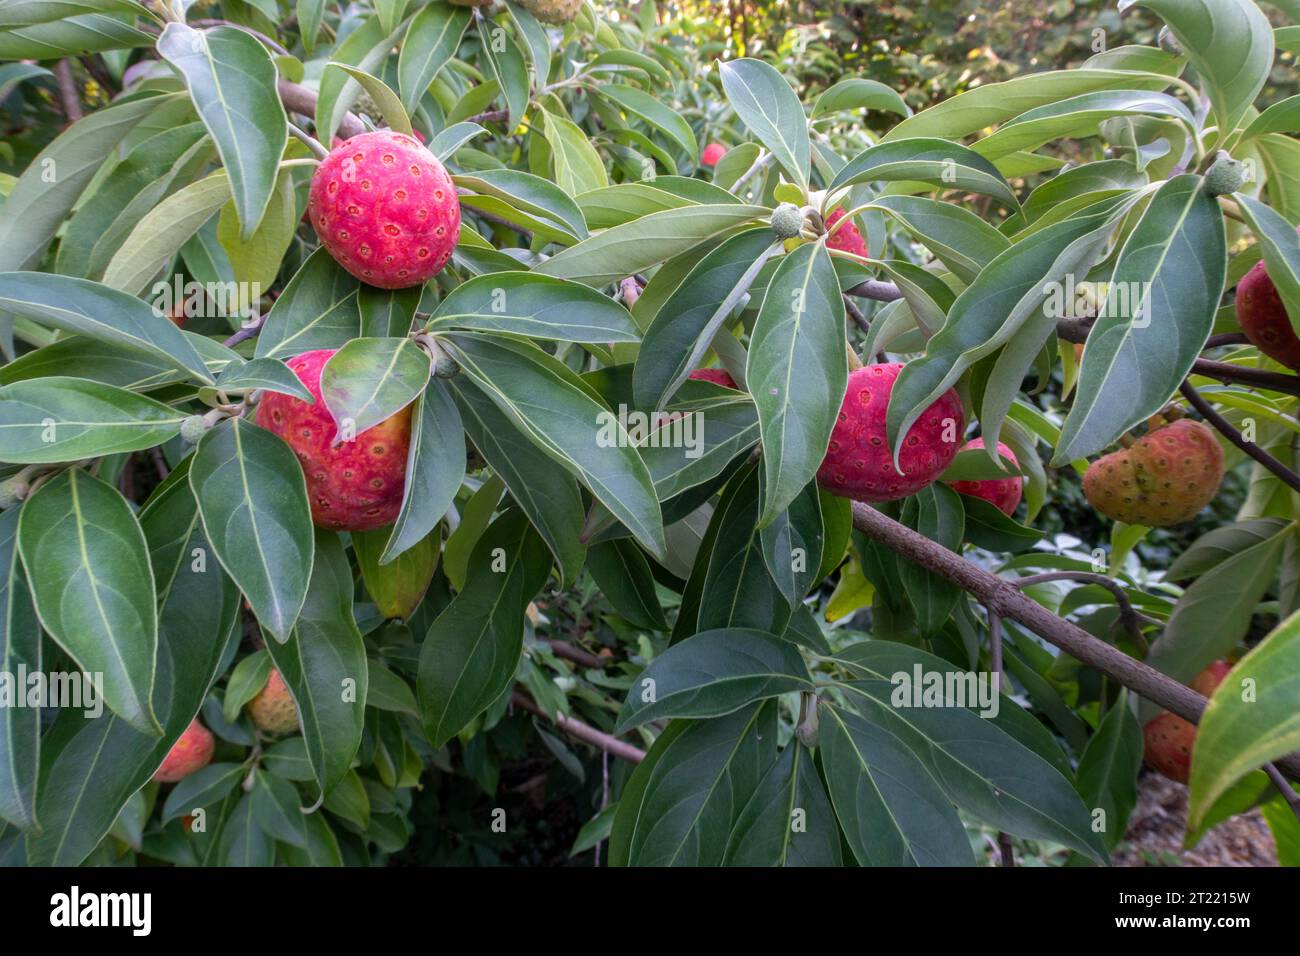 Fruits rouges orangés de Cornus capitata - Dogwood de l'Himalaya, poussant dans un jardin du Devon. Fruits comestibles, cerise de maïs Banque D'Images